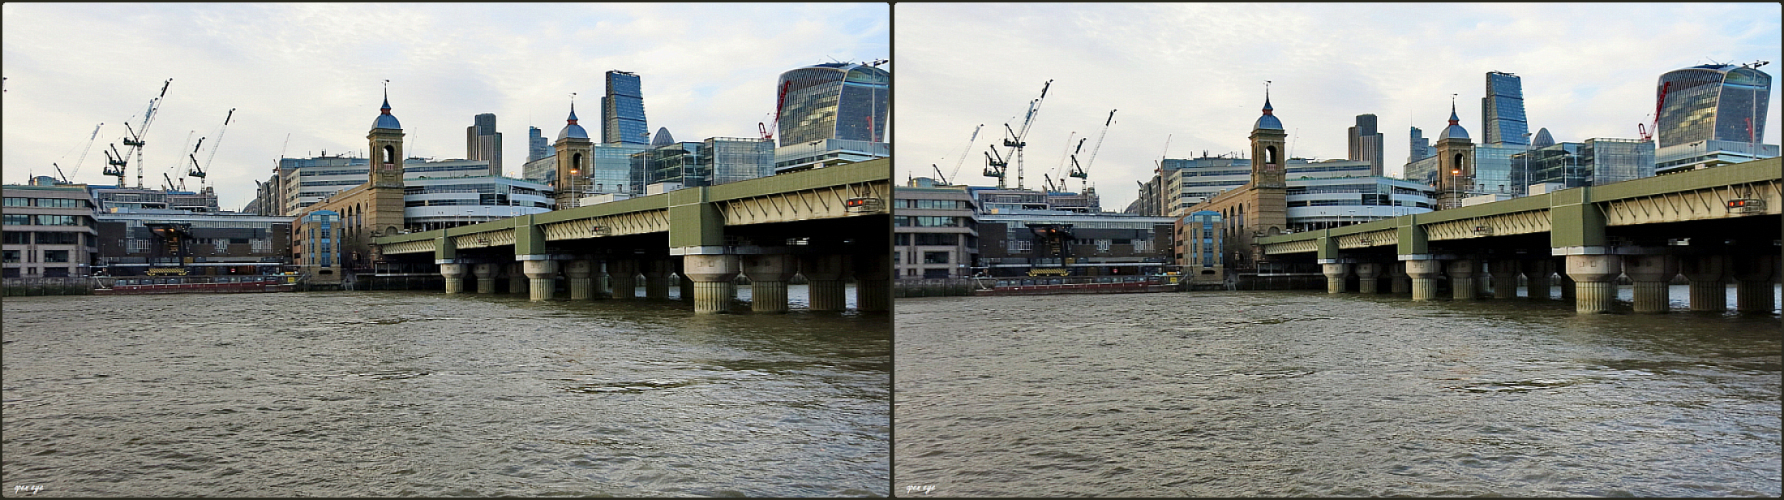 8. _ London - Cannon Street Rail Bridge / X View _